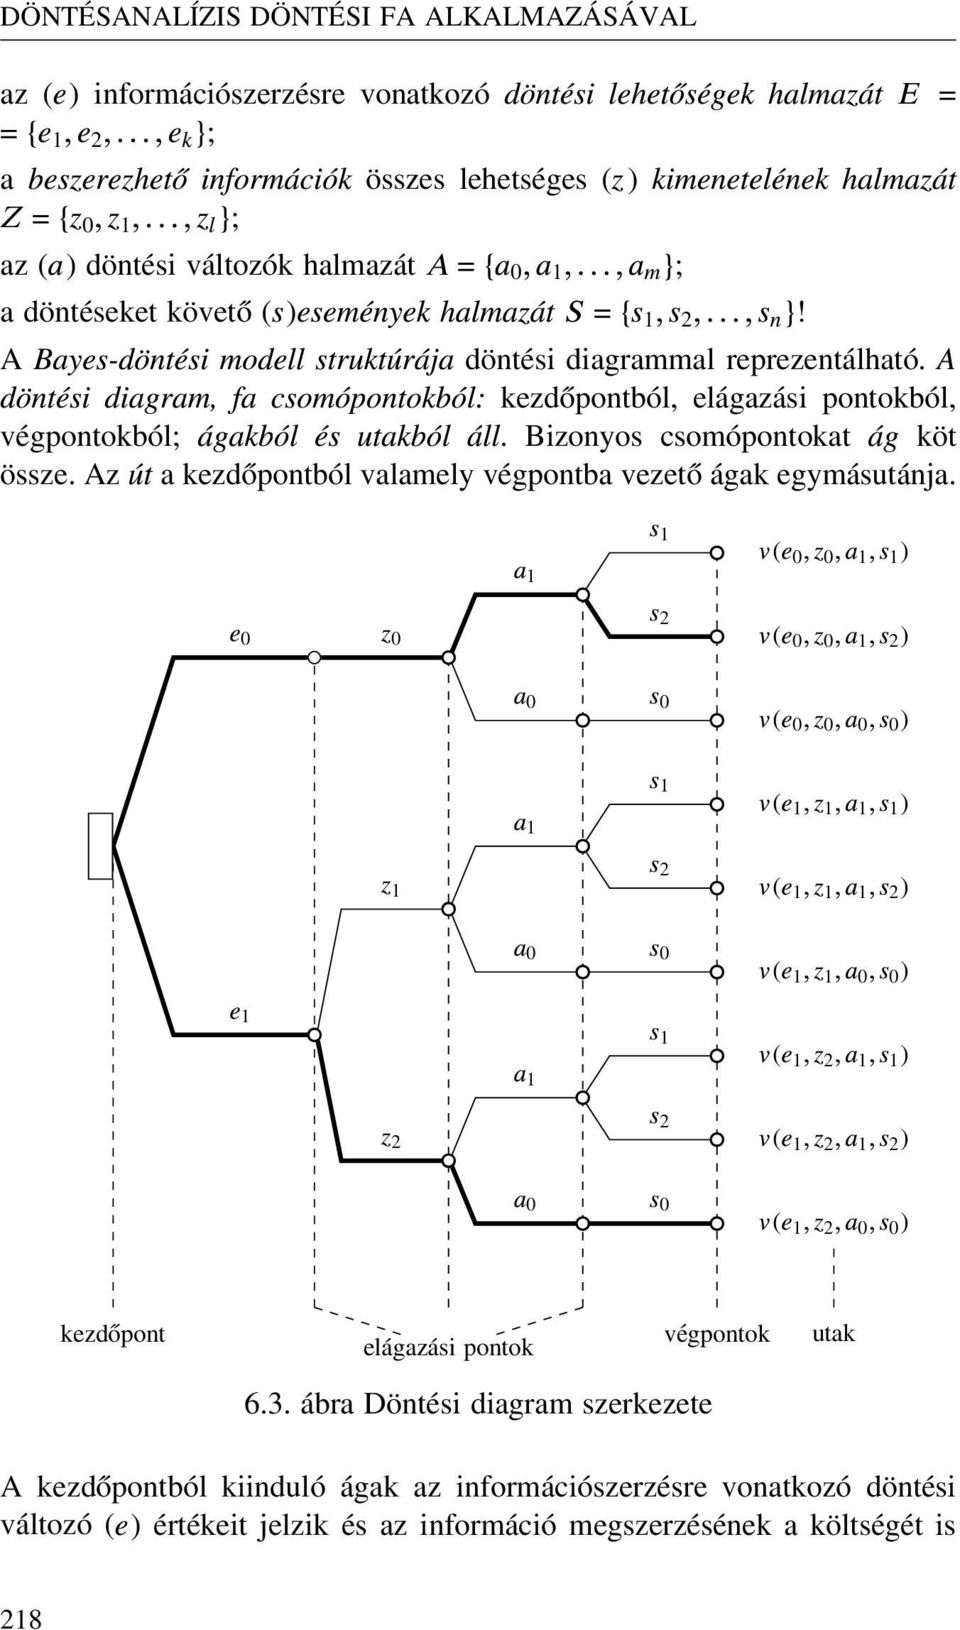 A Bayes-d nt si modell strukt r ja döntési diagrammal reprezentálható. A d nt si diagram, fa csom pontokb l: kezdőpontból, elágazási pontokból, végpontokból; gakb l s utakb l ll.